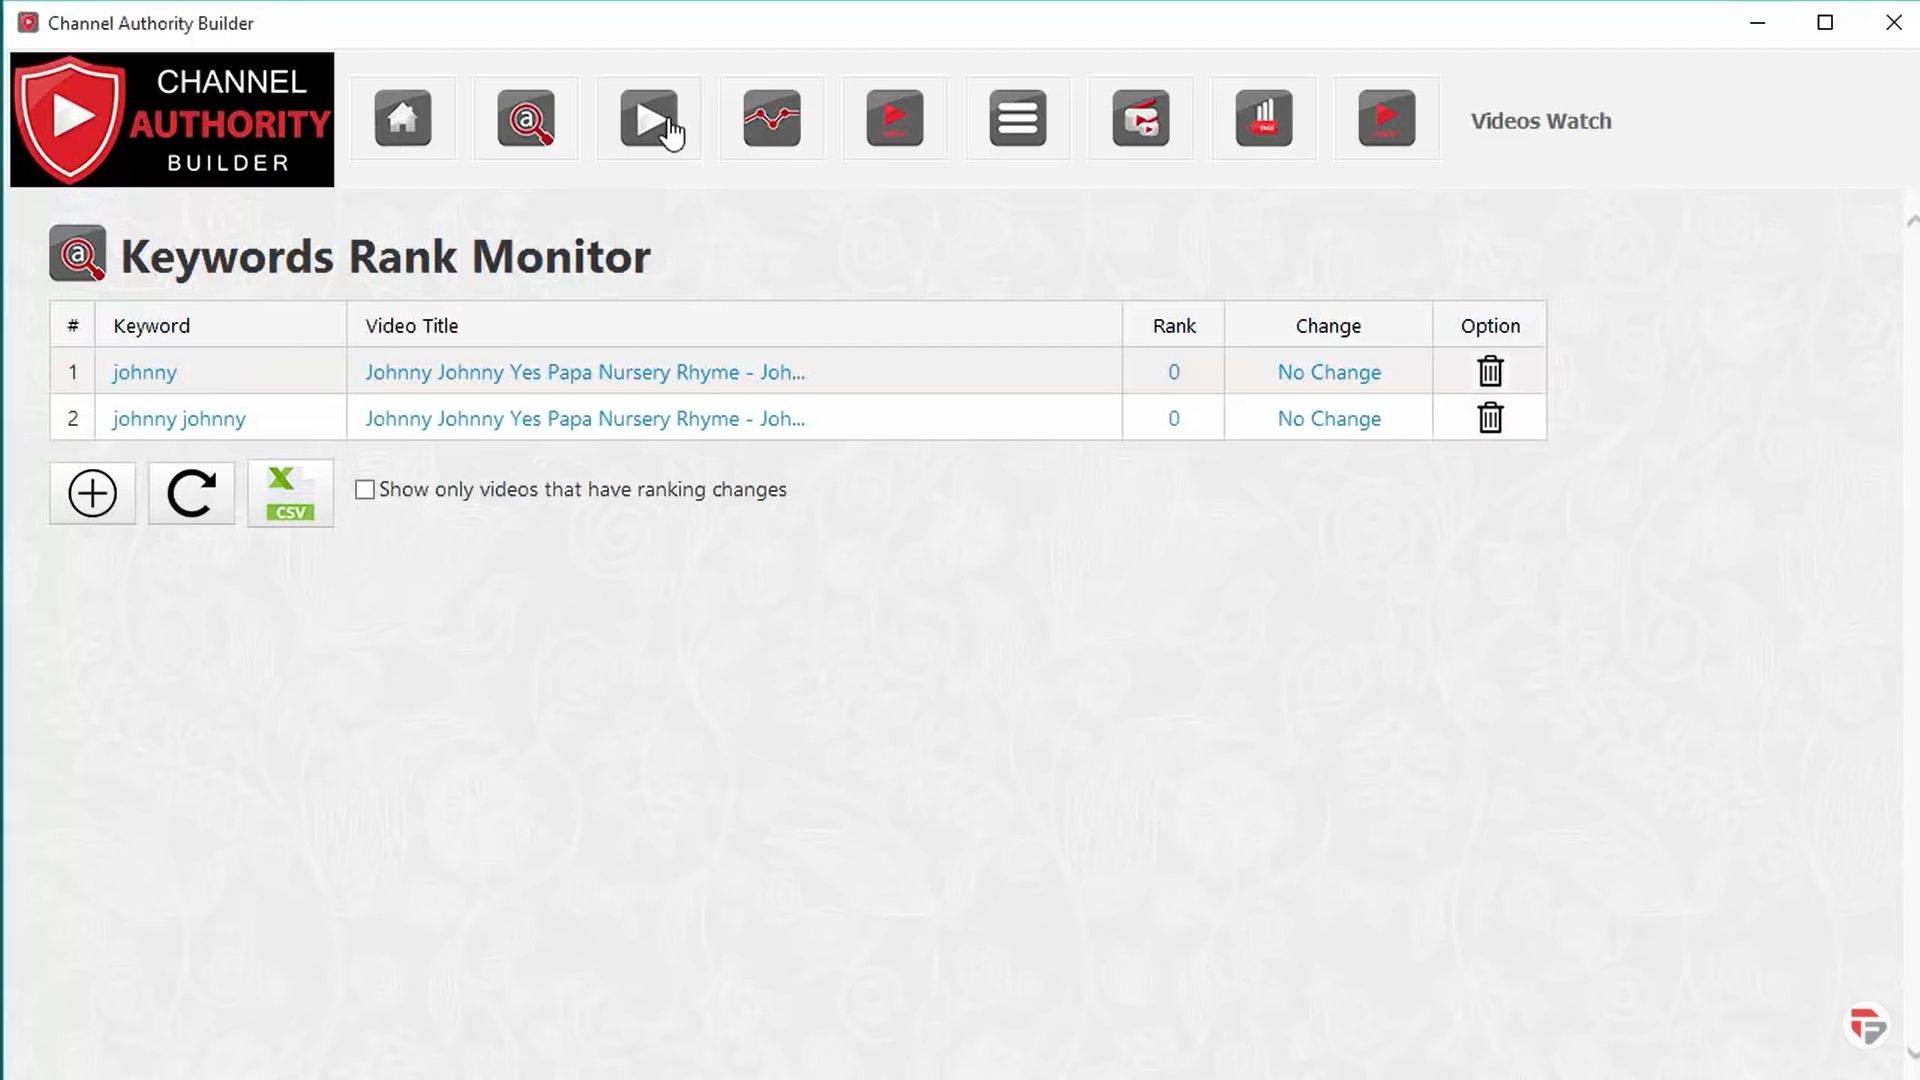 Keyword rank monitor